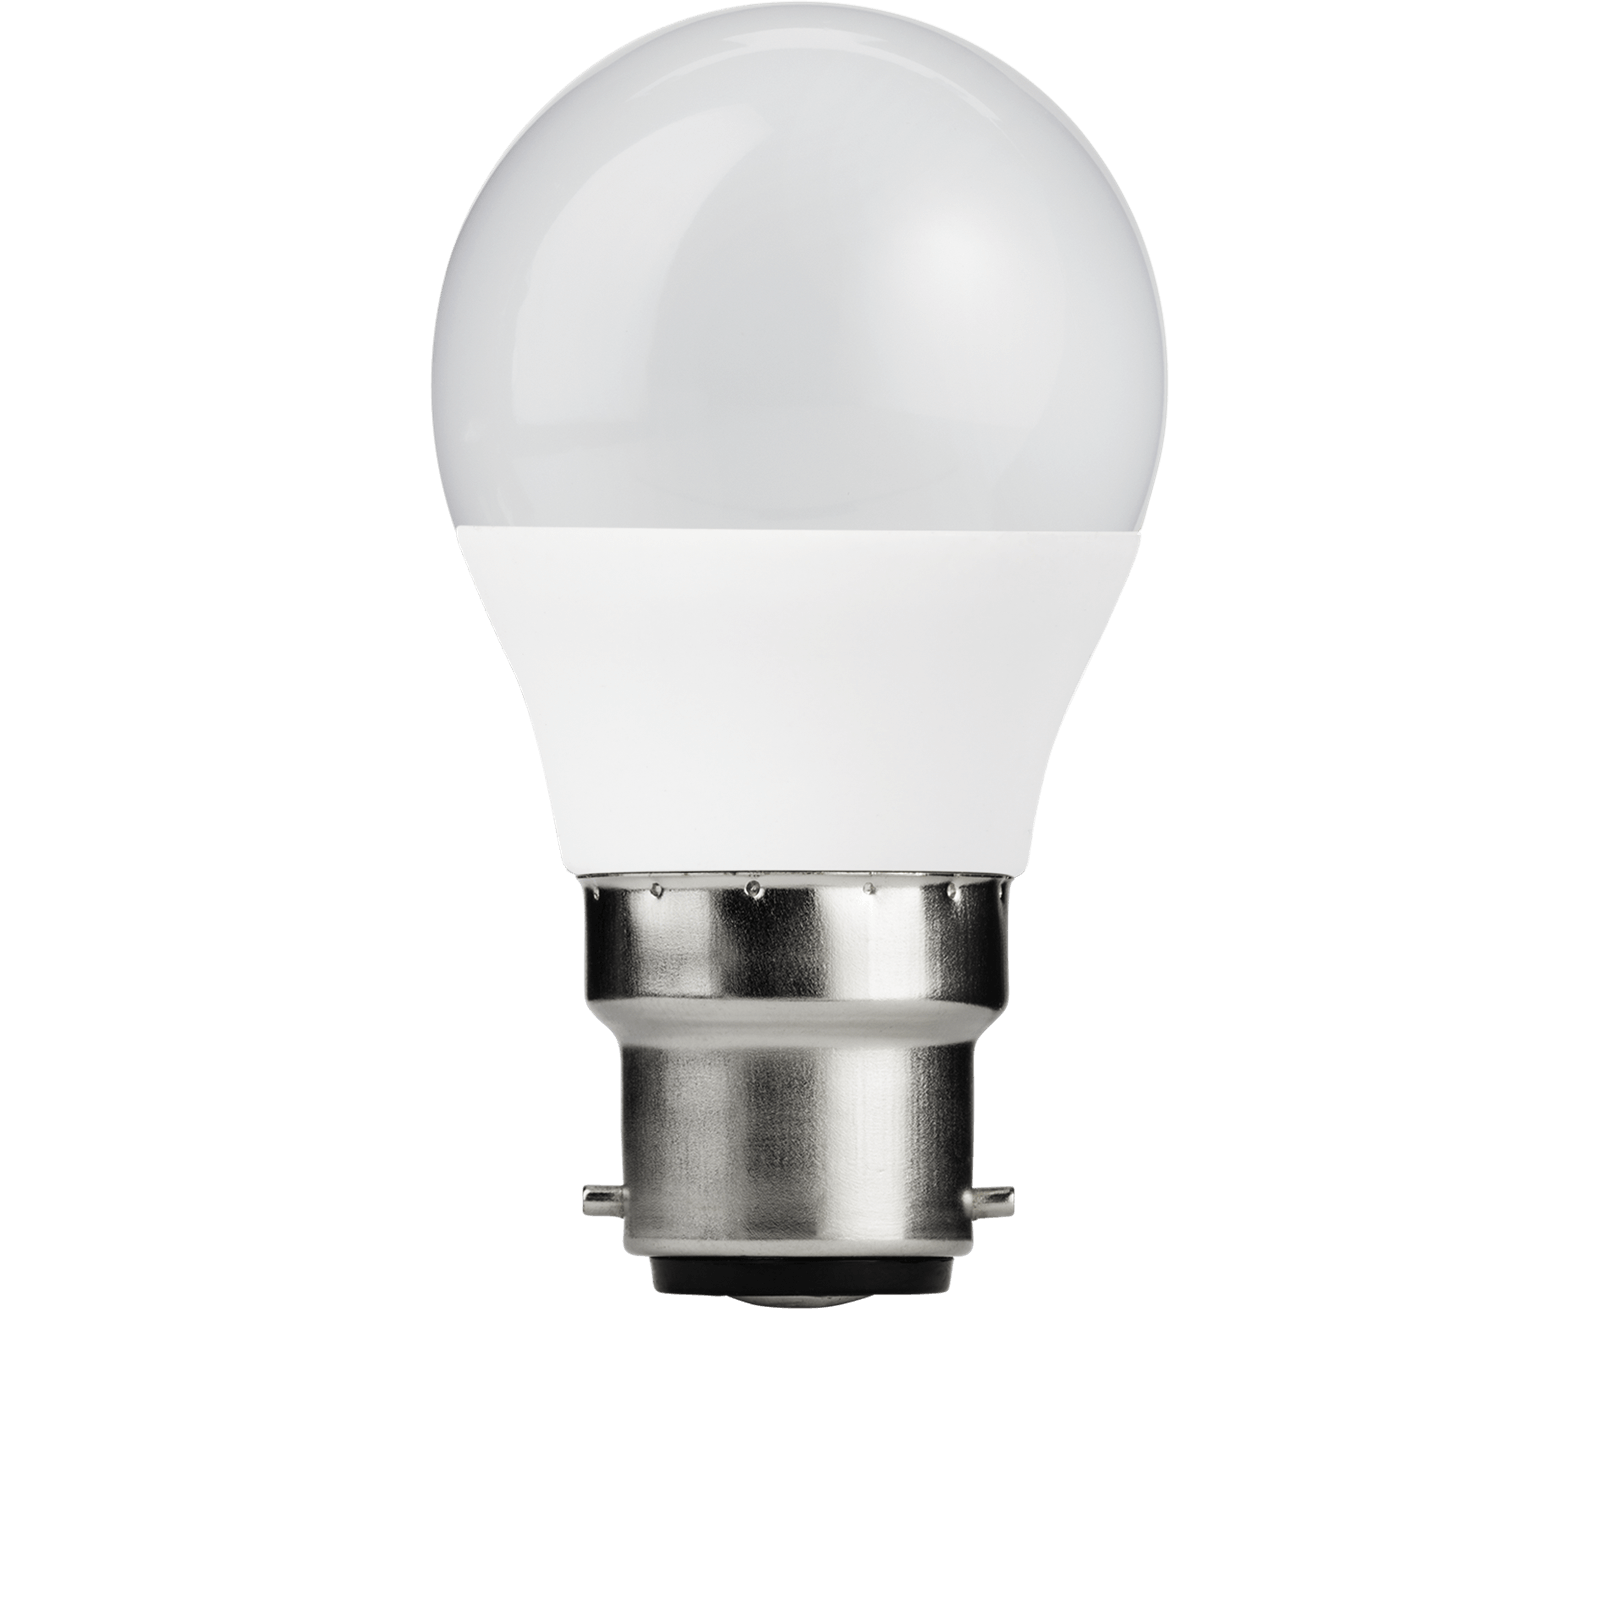 TCP LED Globe 60W B22 Coat Warm Light Bulb - 2 pack